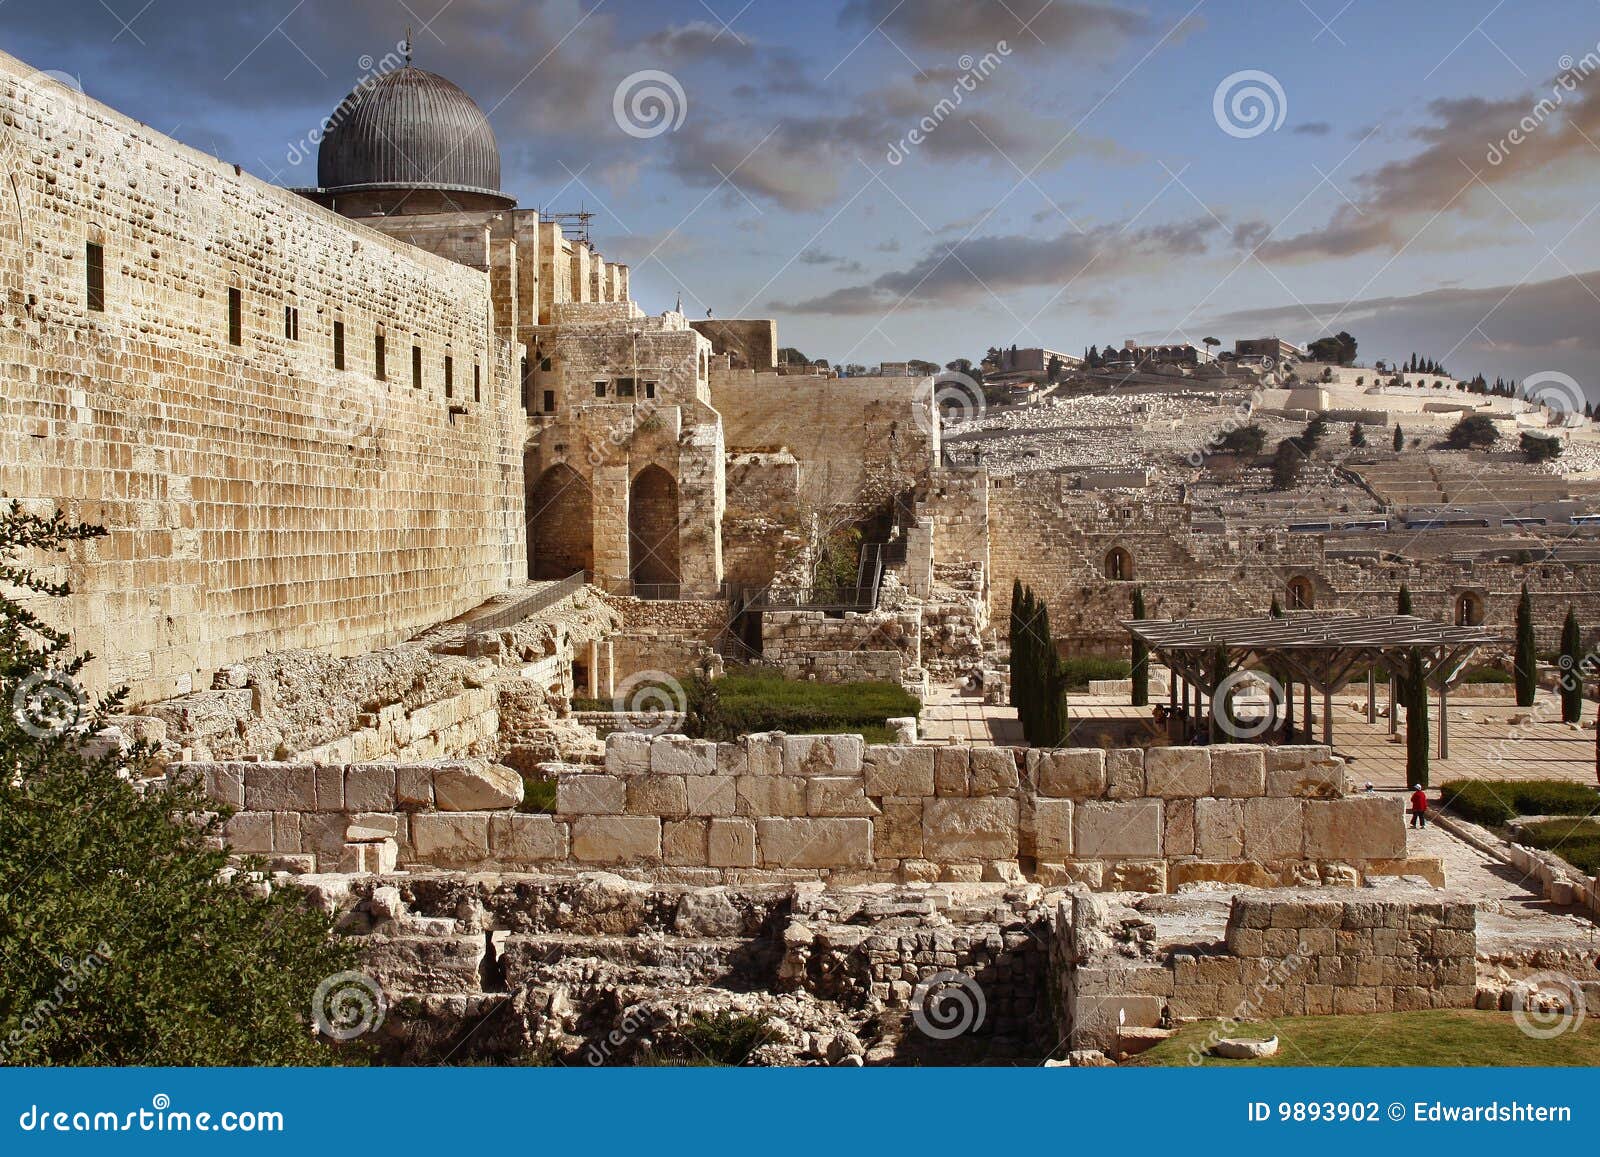 jerusalem. old city